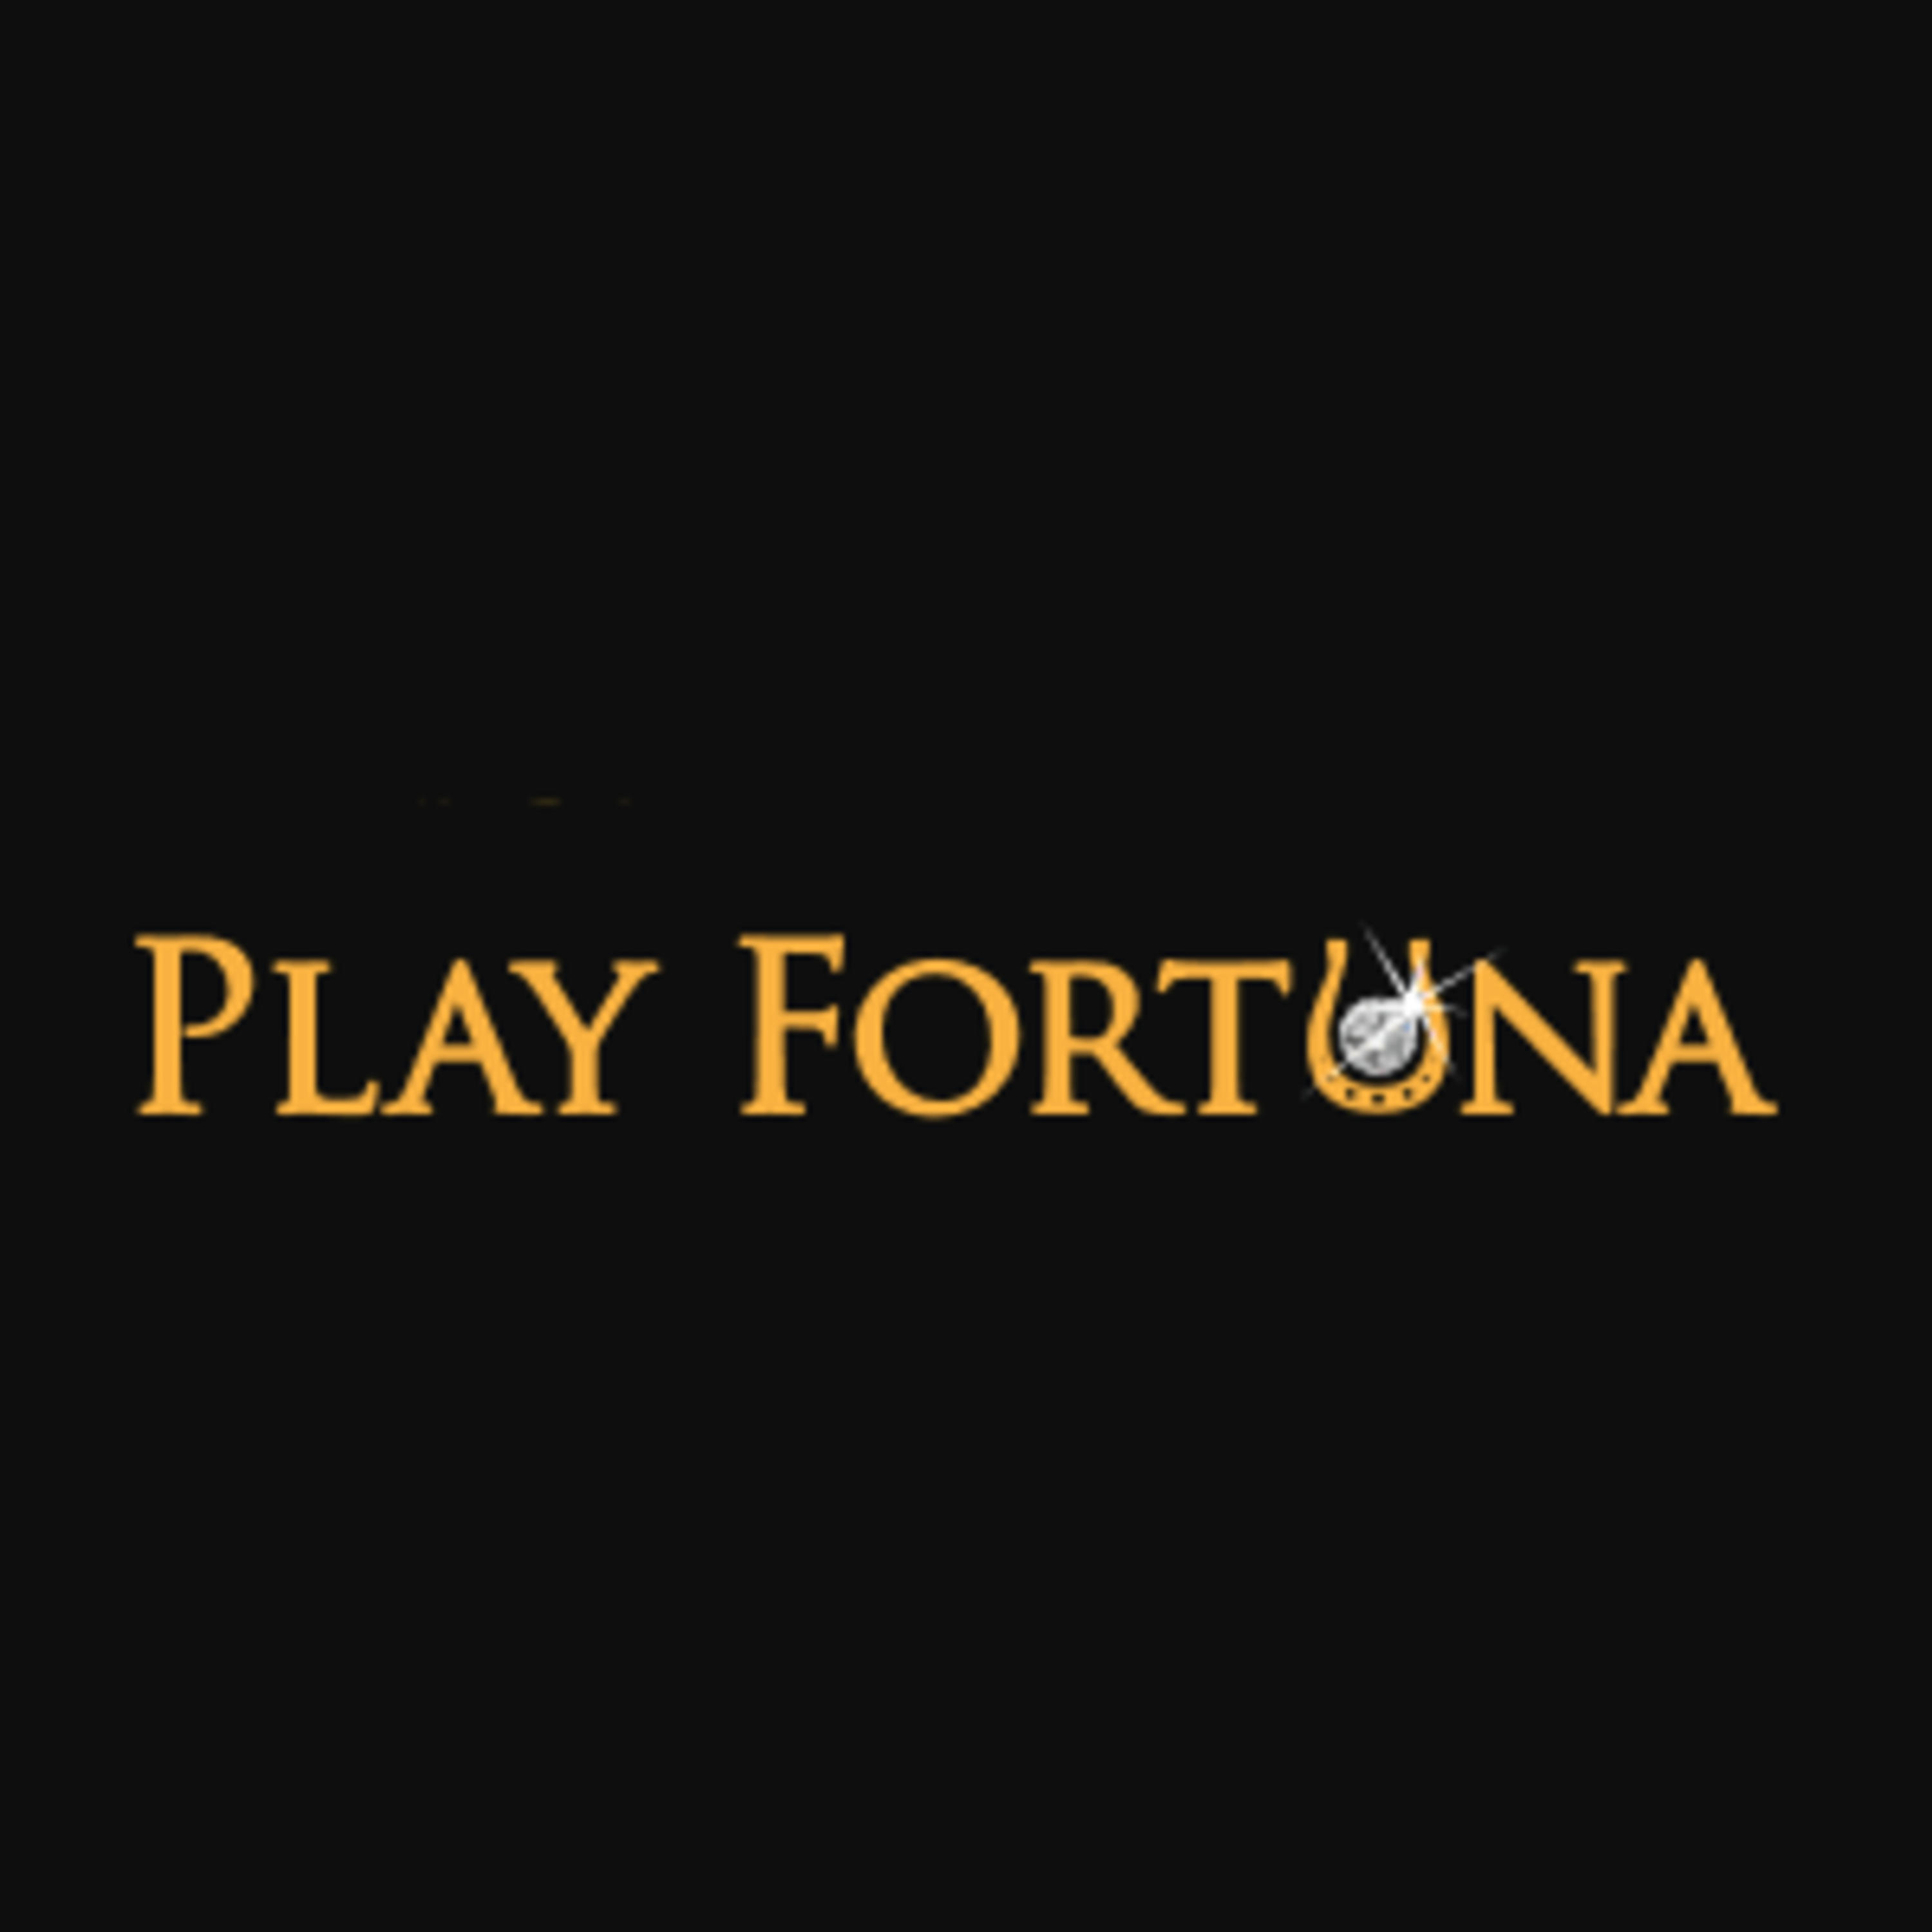 Play fortuna игровые автоматы